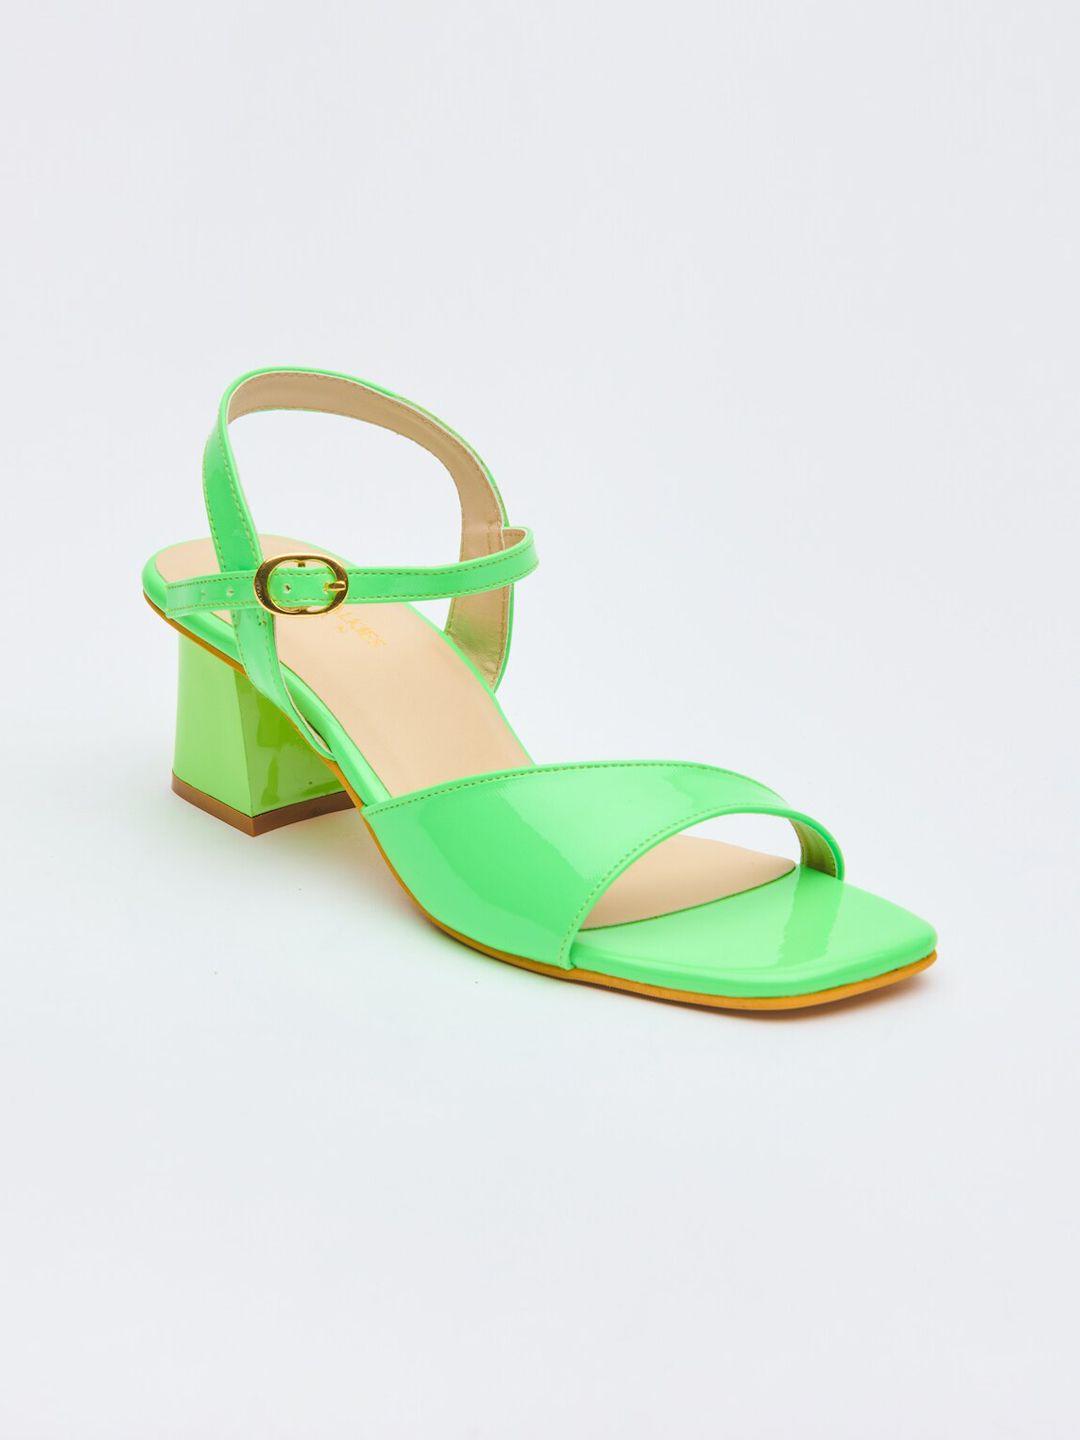 tokyo talkies women green block sandals with buckles